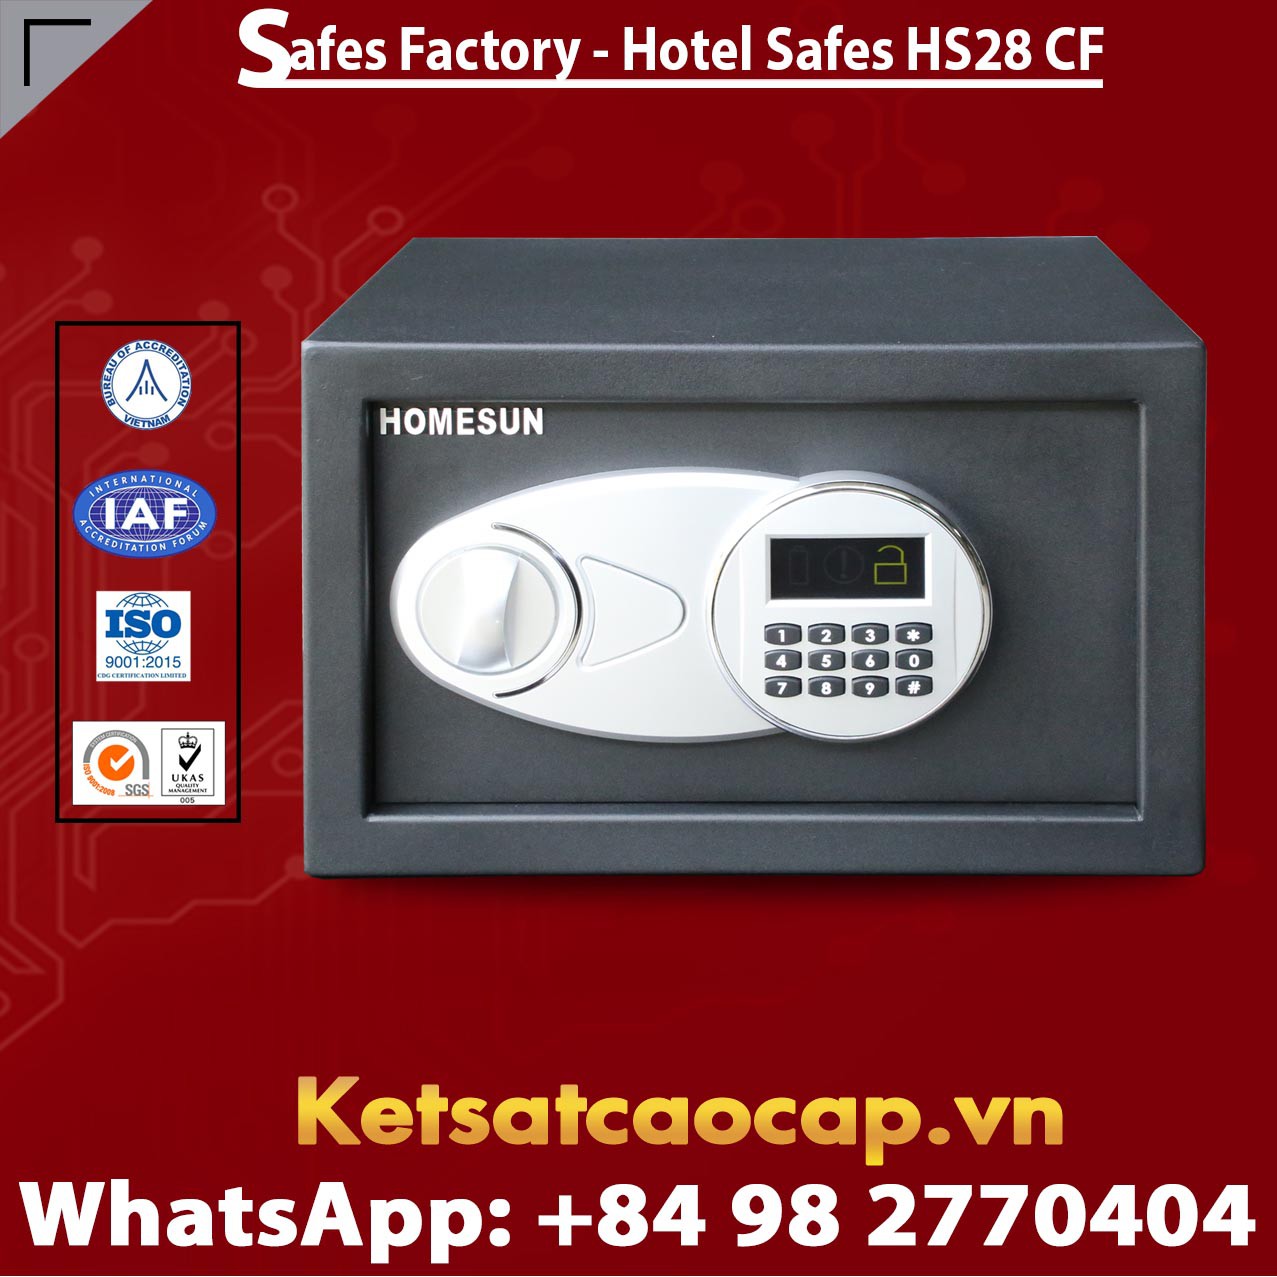 Portable Hotel Safe HOMESUN HS28 CF